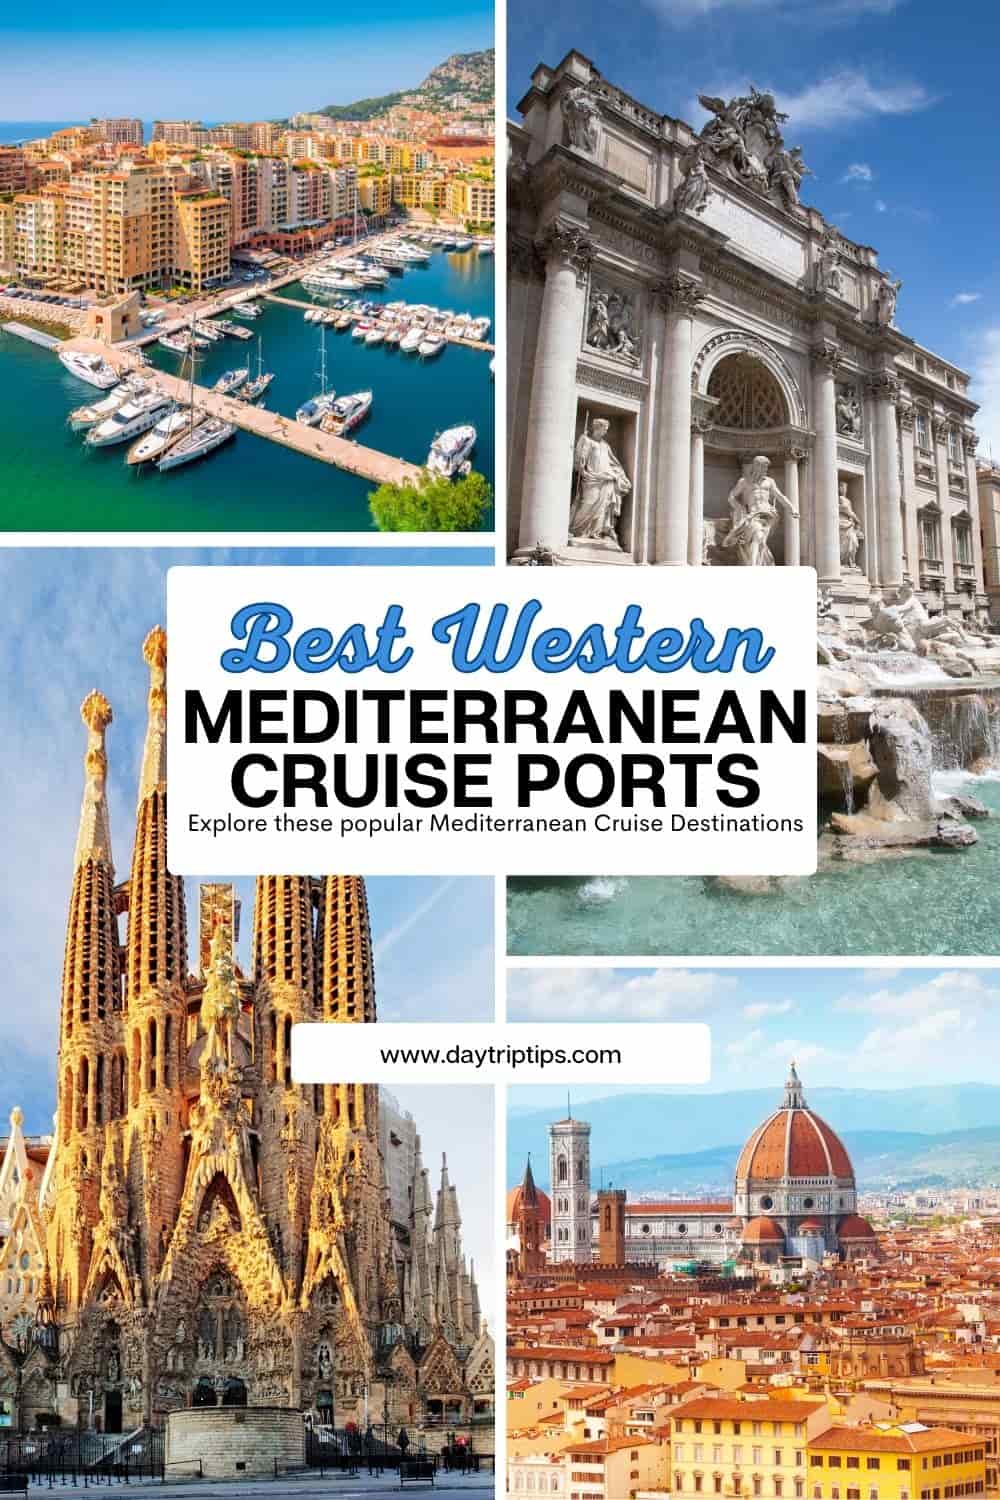 Best Western Mediterranean Cruise Ports